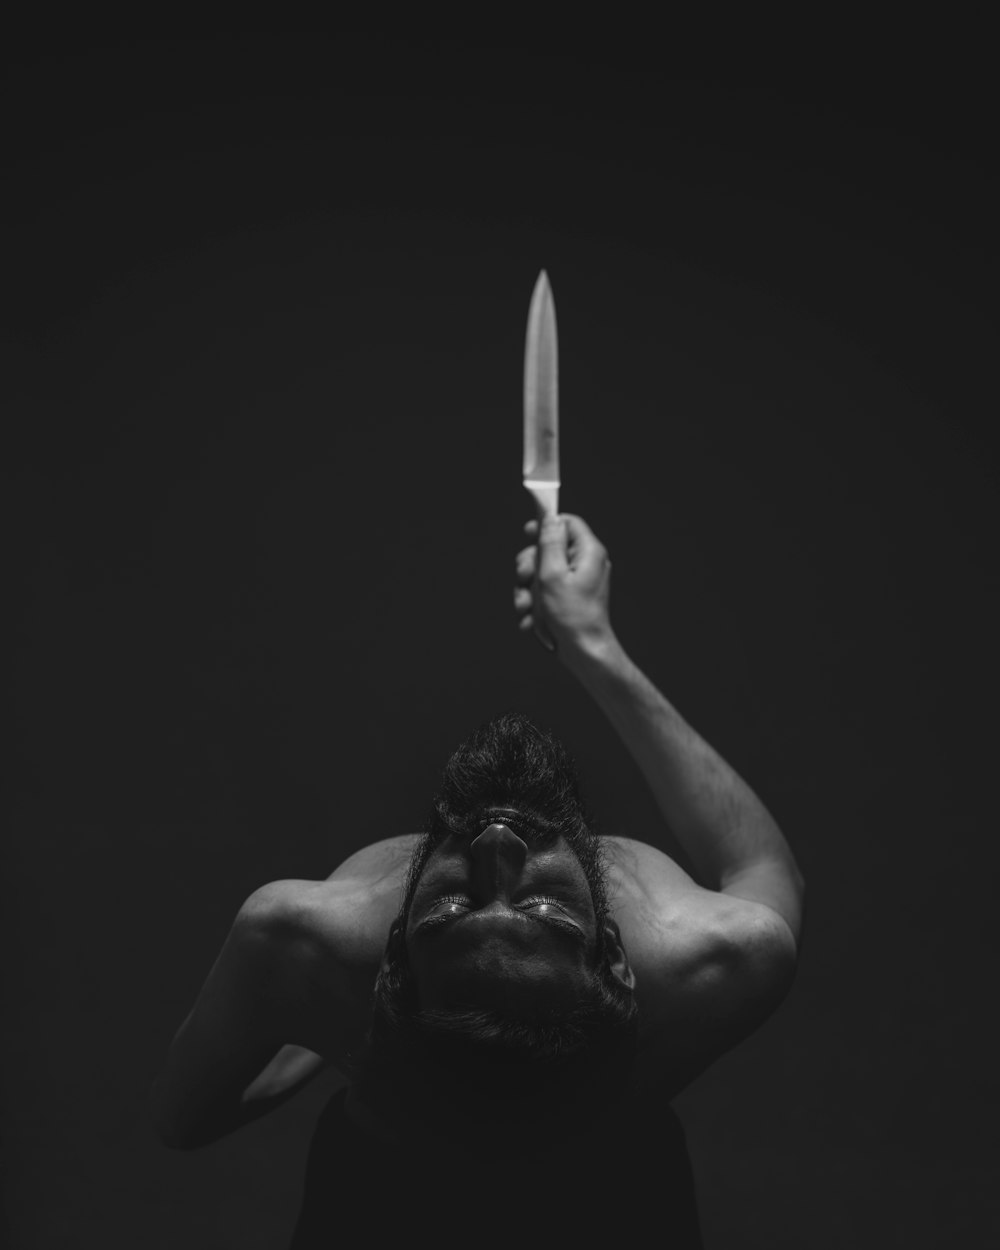 Fotografía en escala de grises de un hombre sosteniendo un cuchillo